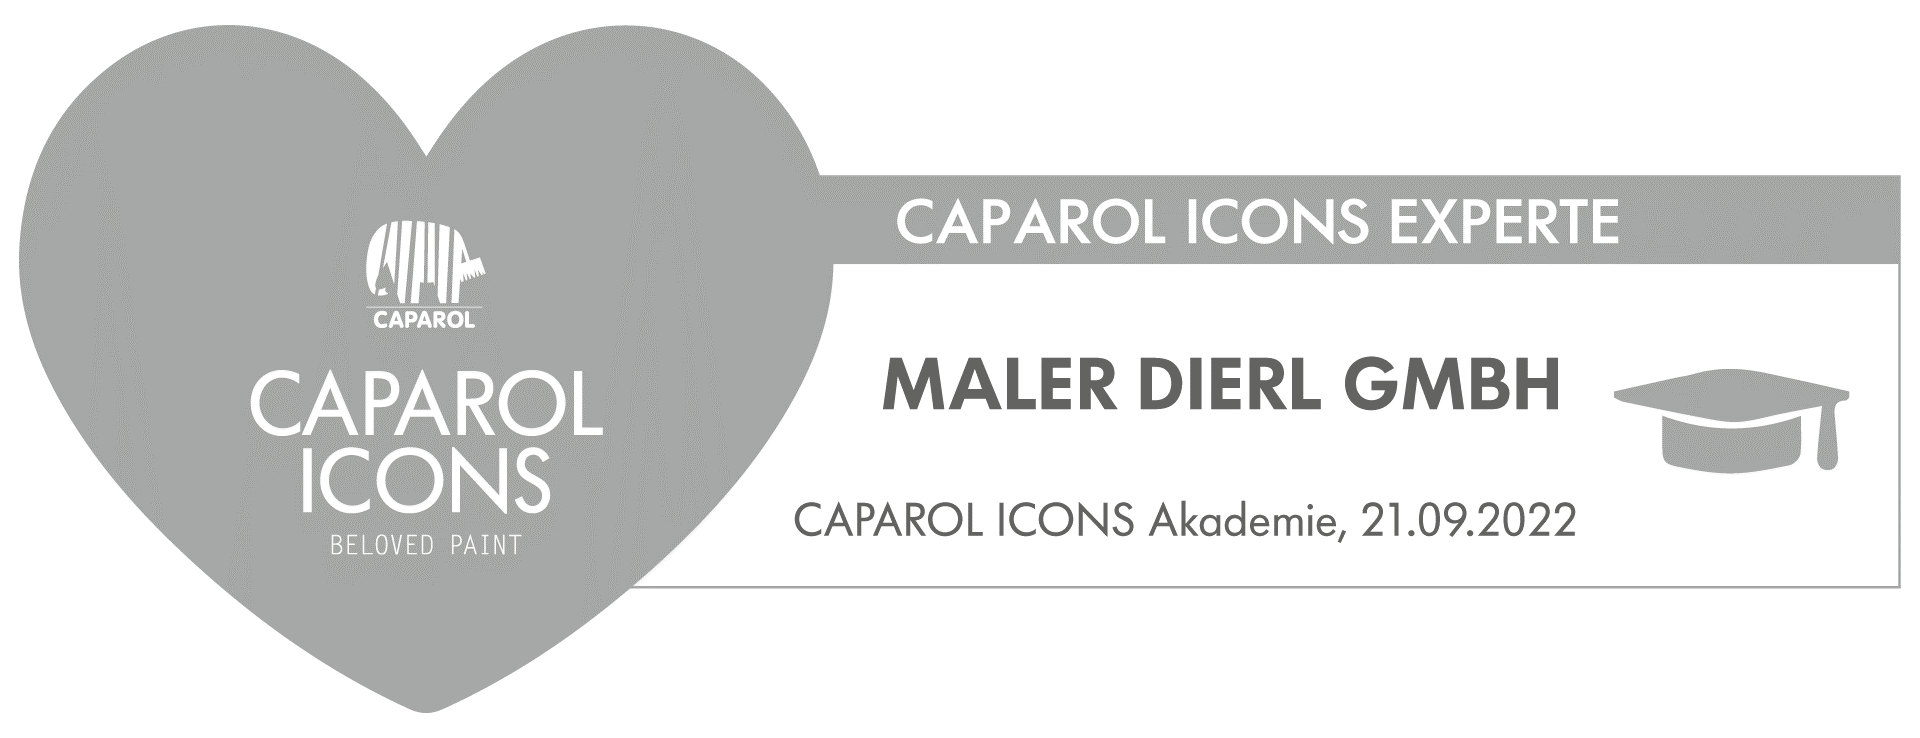 CAPAROL ICONS Experte Maler Dierl